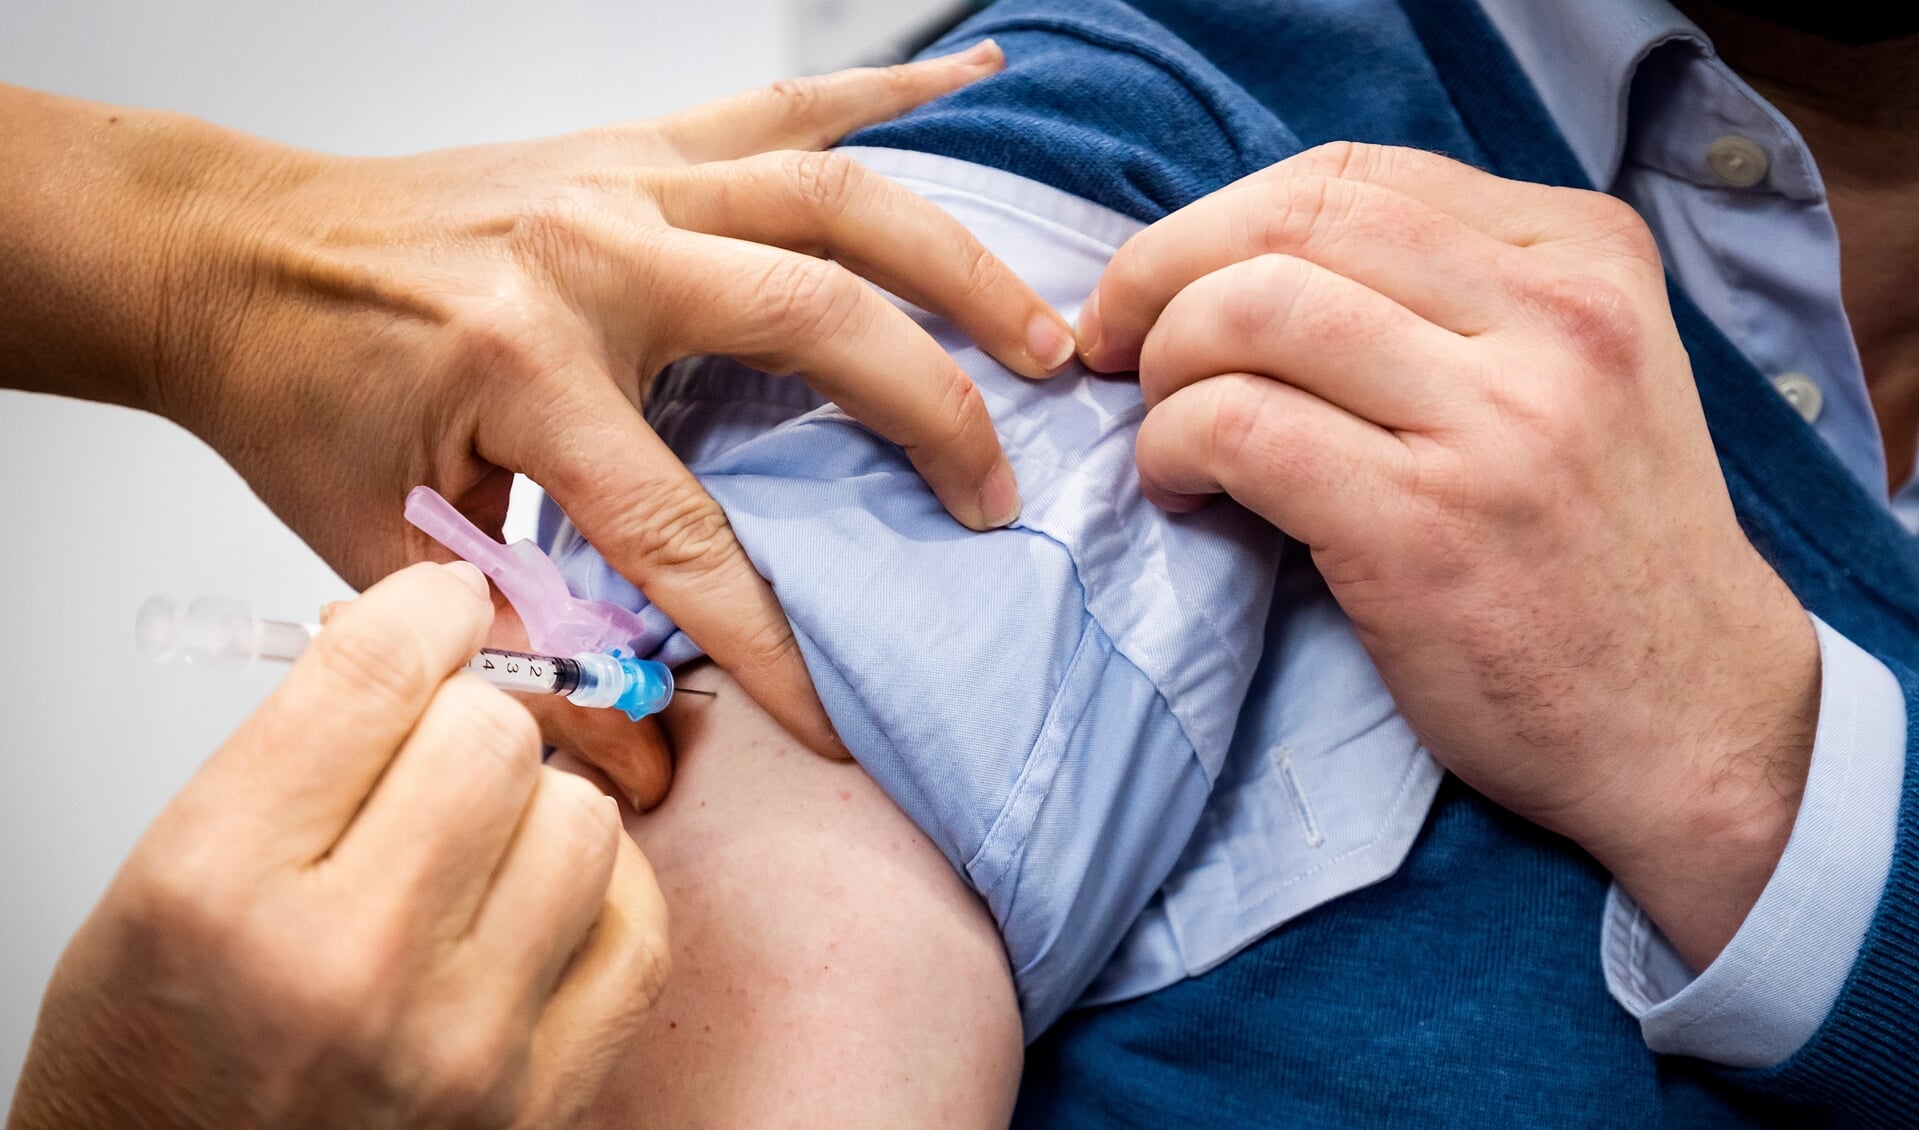 'Uit onderzoeken bleek dat ongevaccineerde mensen, ongeacht leeftijd, vooral angstig zijn over de langetermijneffecten van het vaccin.'